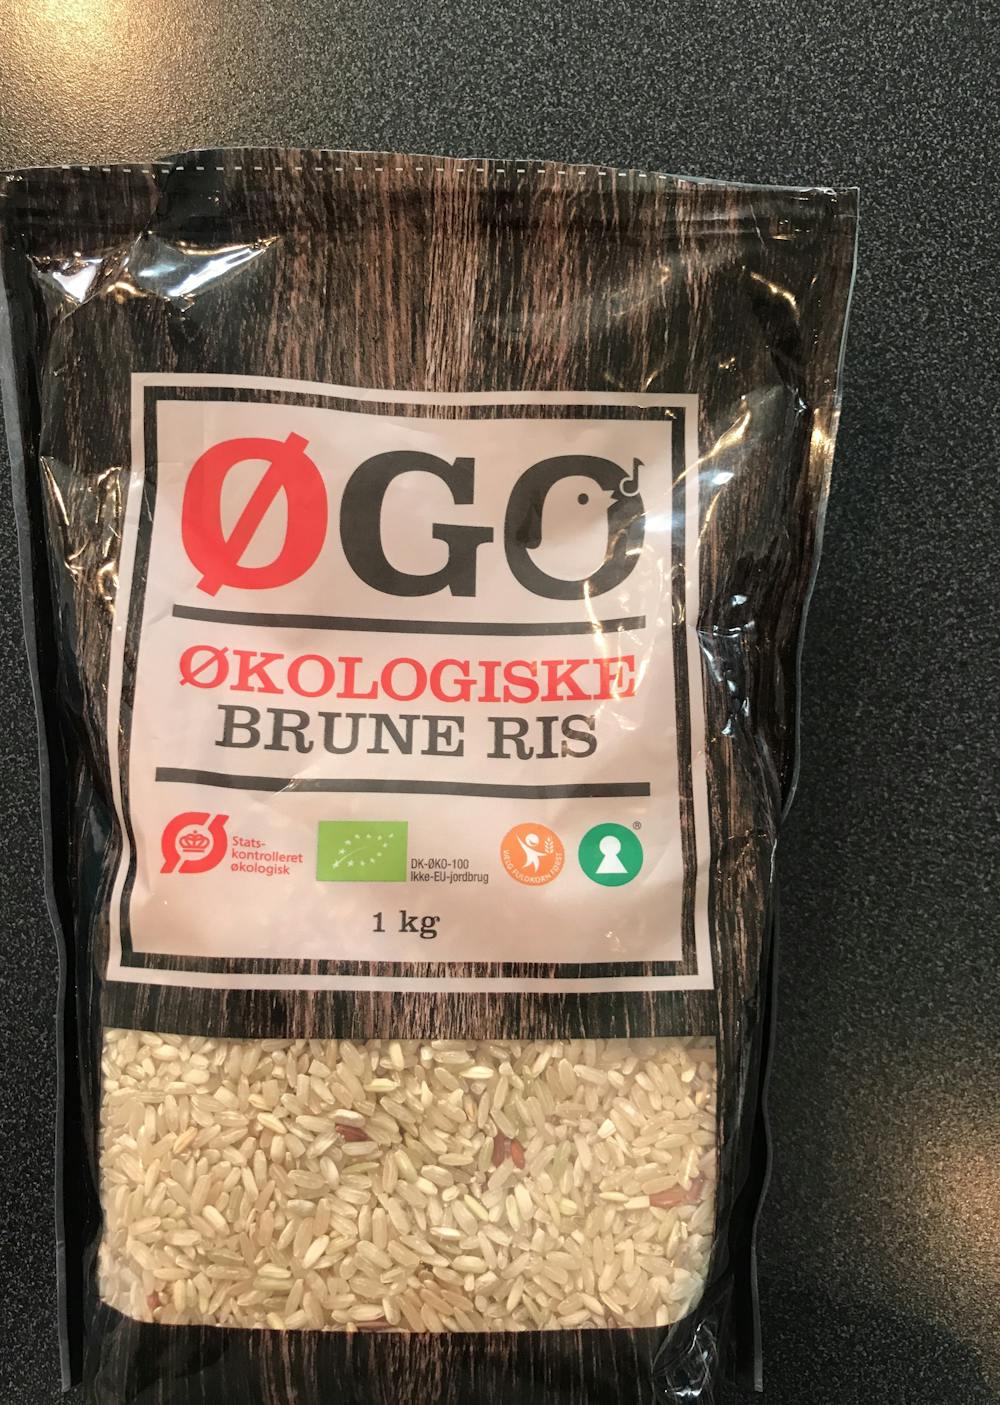 Økologiske brune ris, ØGO